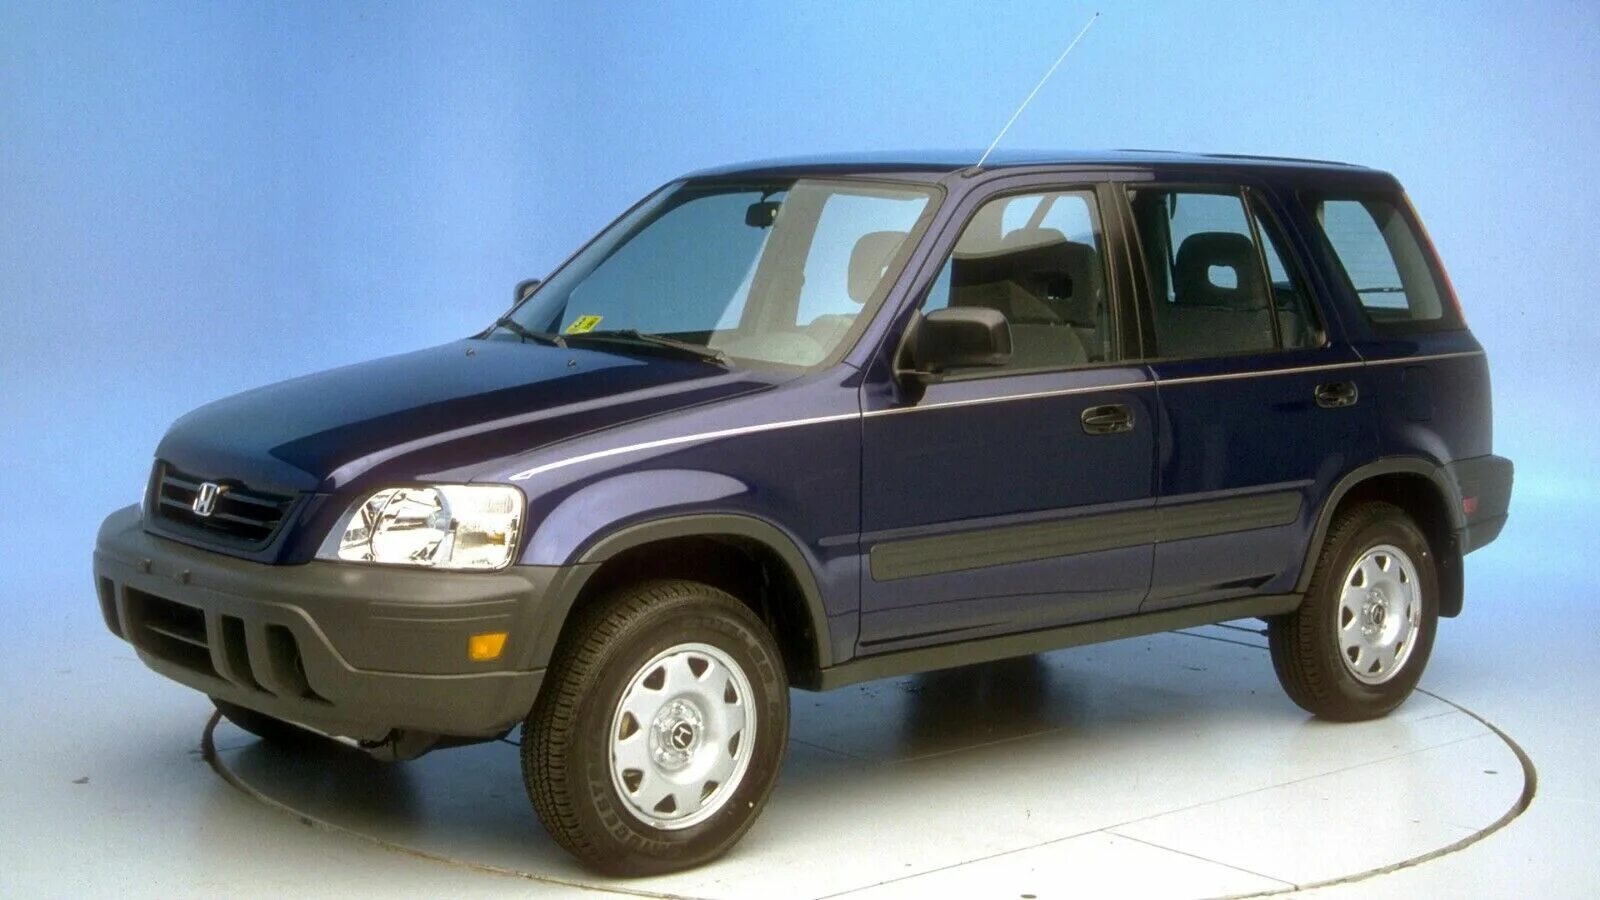 Honda CRV 2000. Honda CR-V 1997. Honda CRV 1998. Honda CR-V 1999.